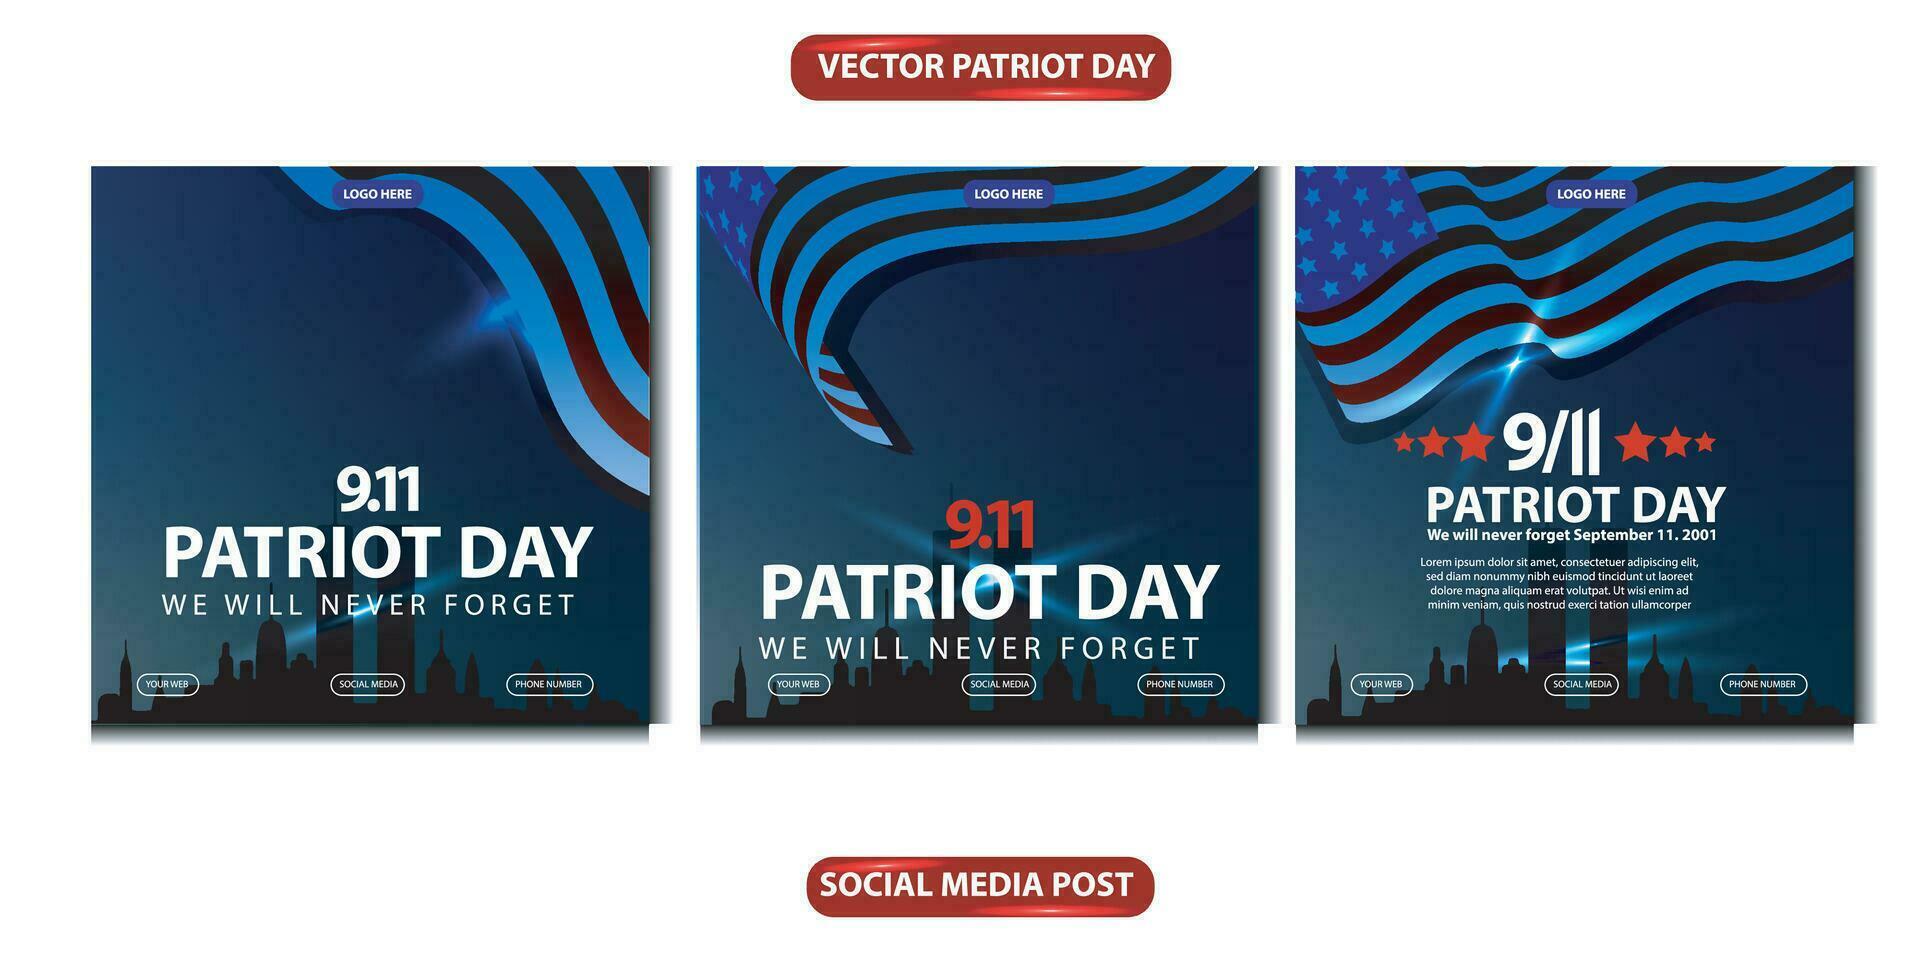 patriot dag vi kommer aldrig glömma bort. baner, social media posta, flygblad eller hälsning kort med blå röd demokrati berättelse och amerikan flagga tema. vektor illustration